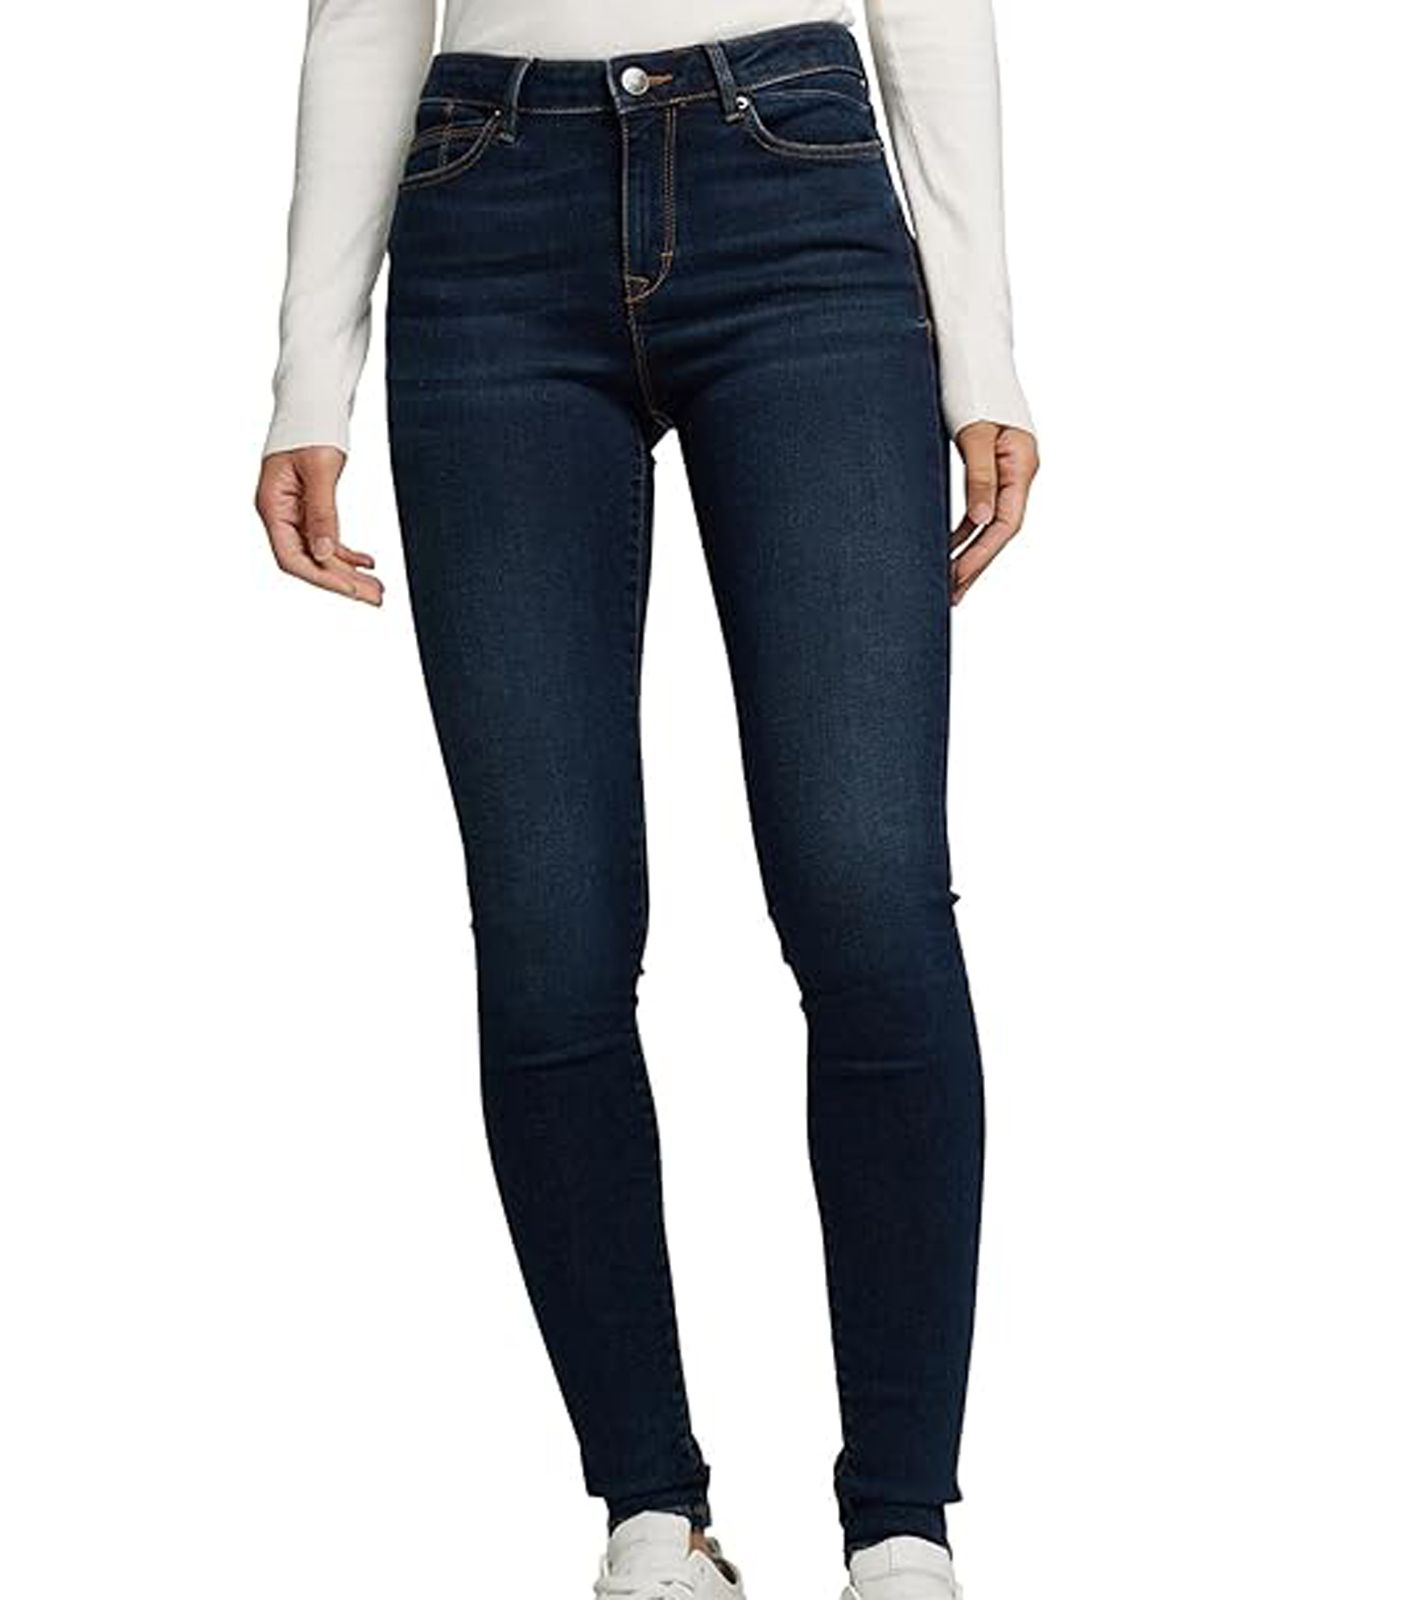 ESPRIT Skinny Jeans nachhaltige Damen 5-Pocket Hose Washed Effekt 48652641 Blau von ESPRIT